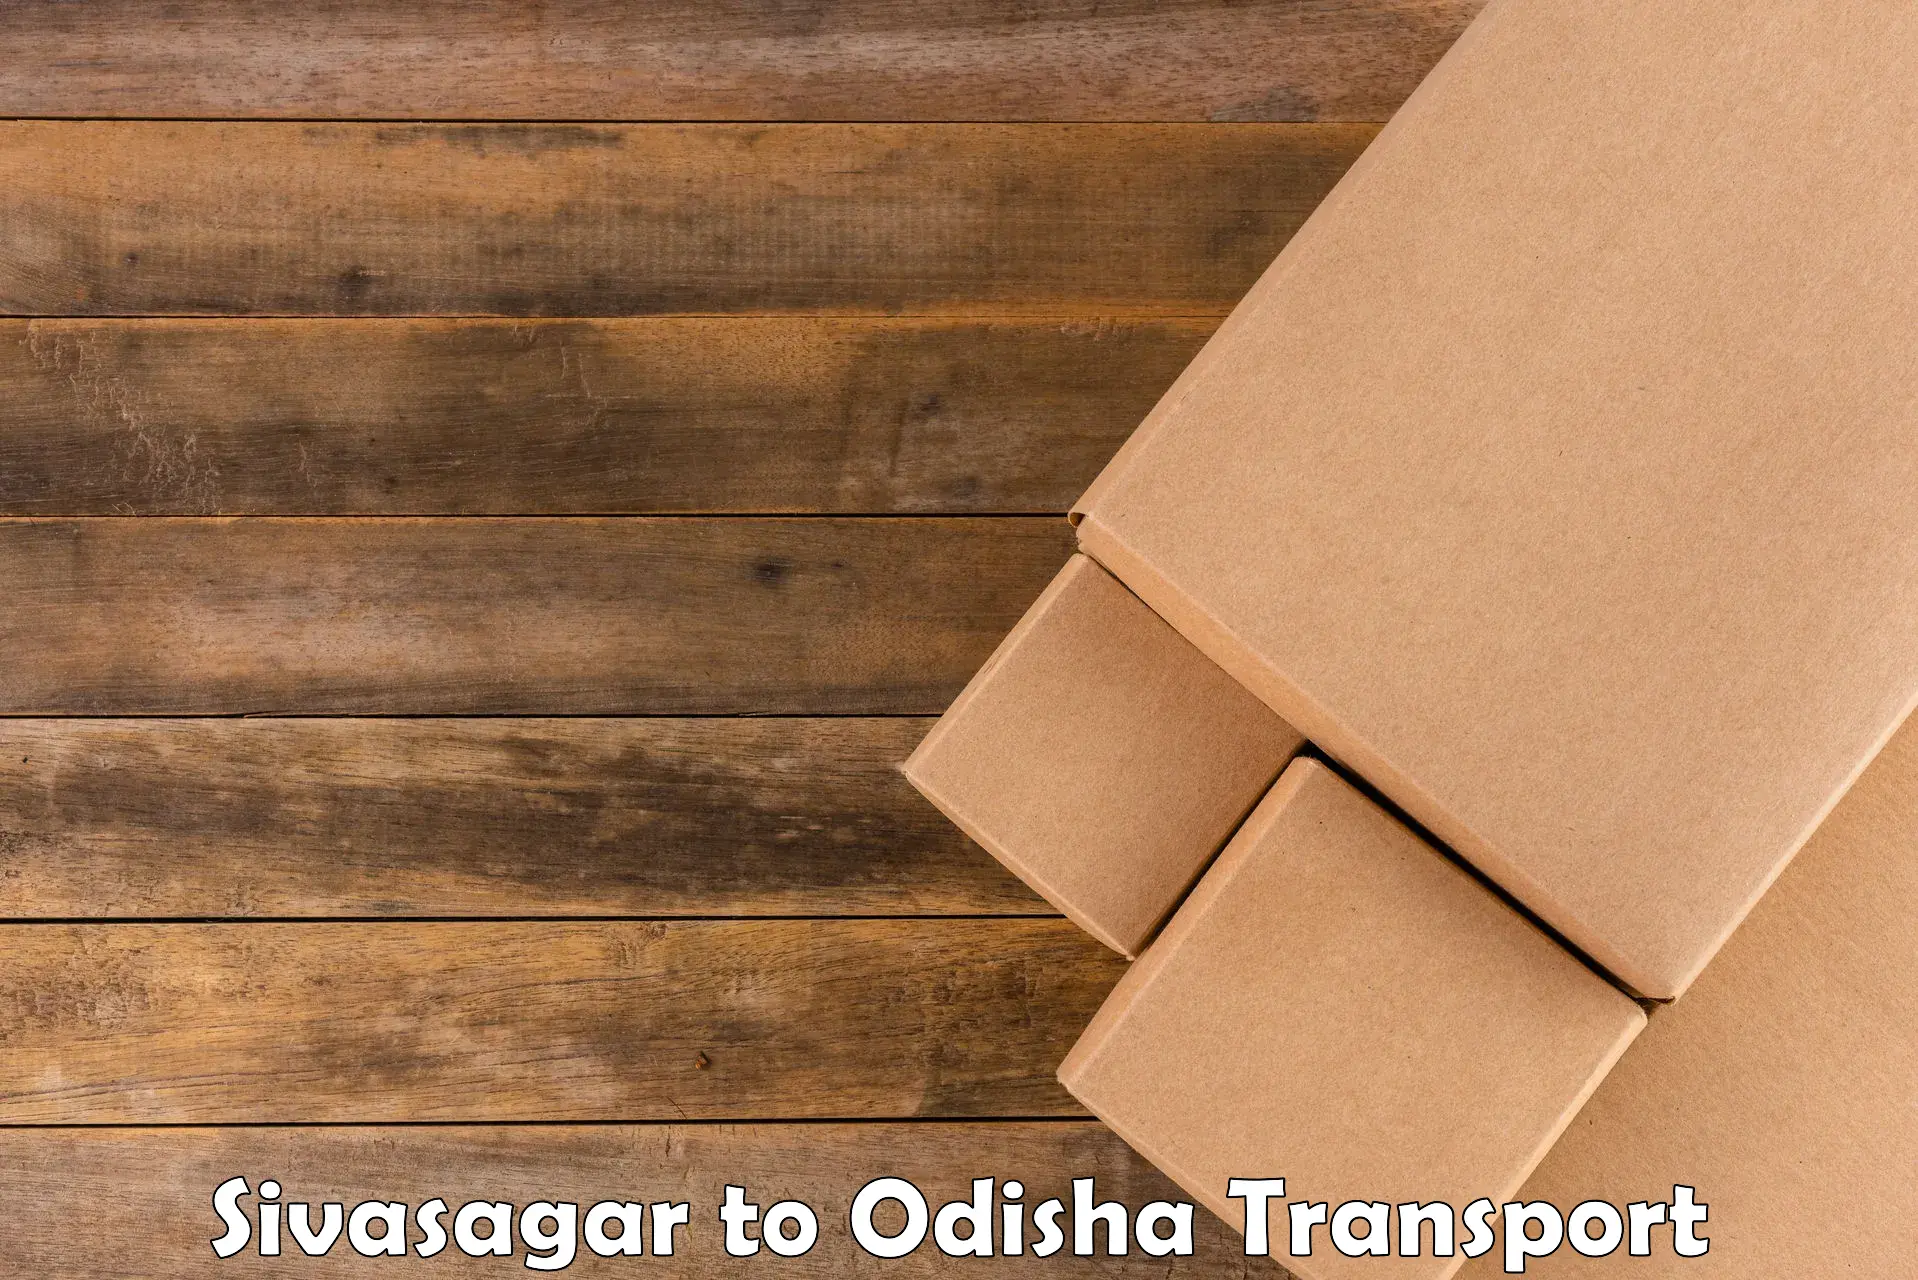 Cargo transportation services Sivasagar to Badamba